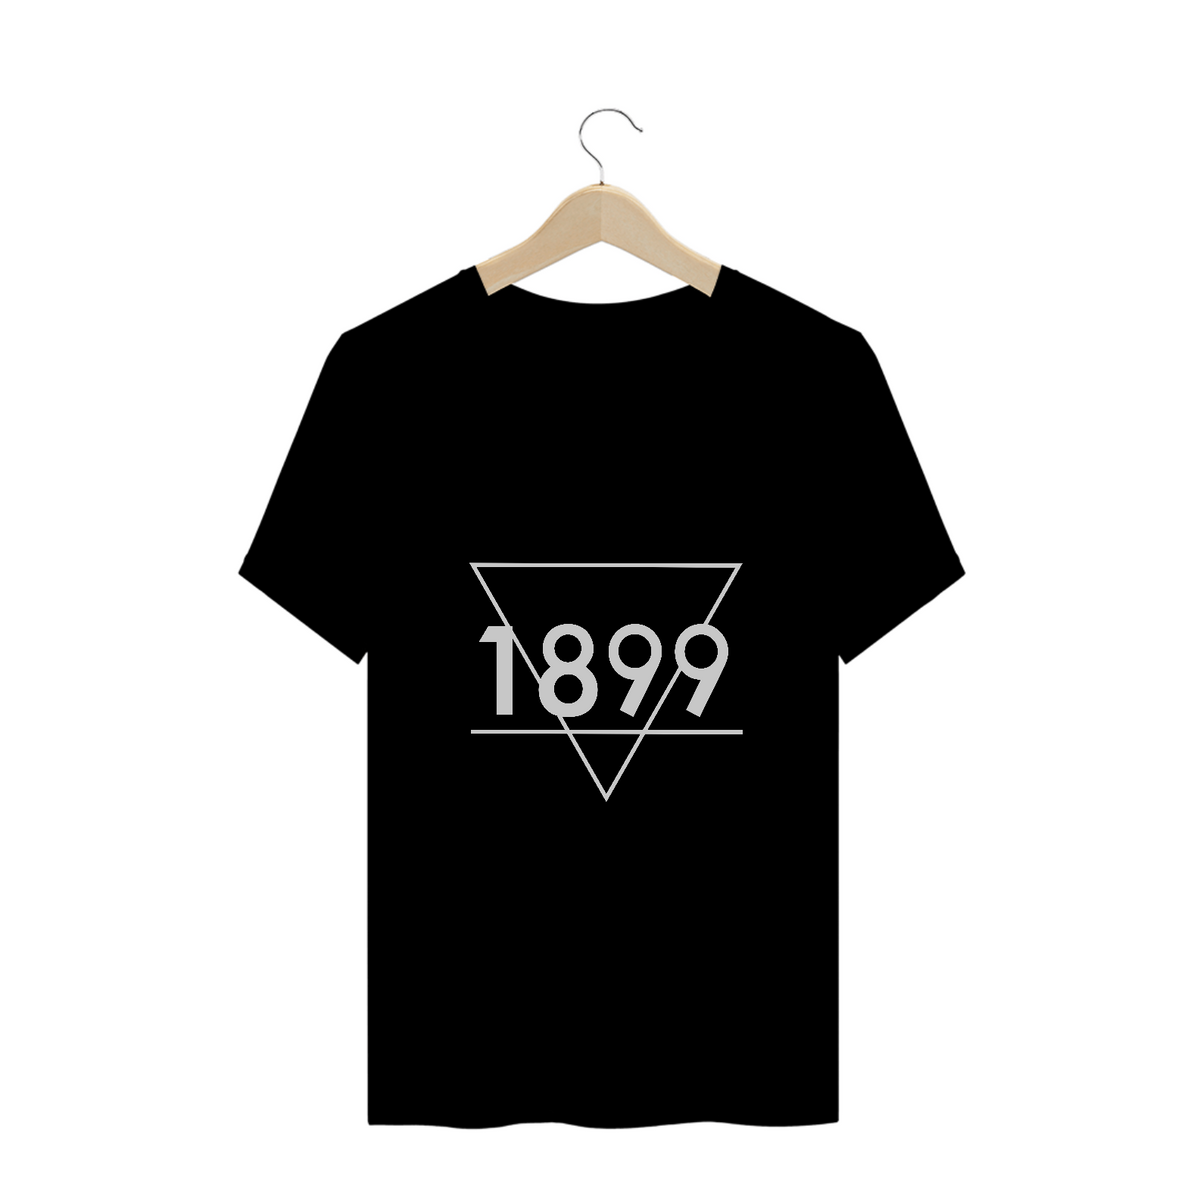 Nome do produto: Camisa 1899